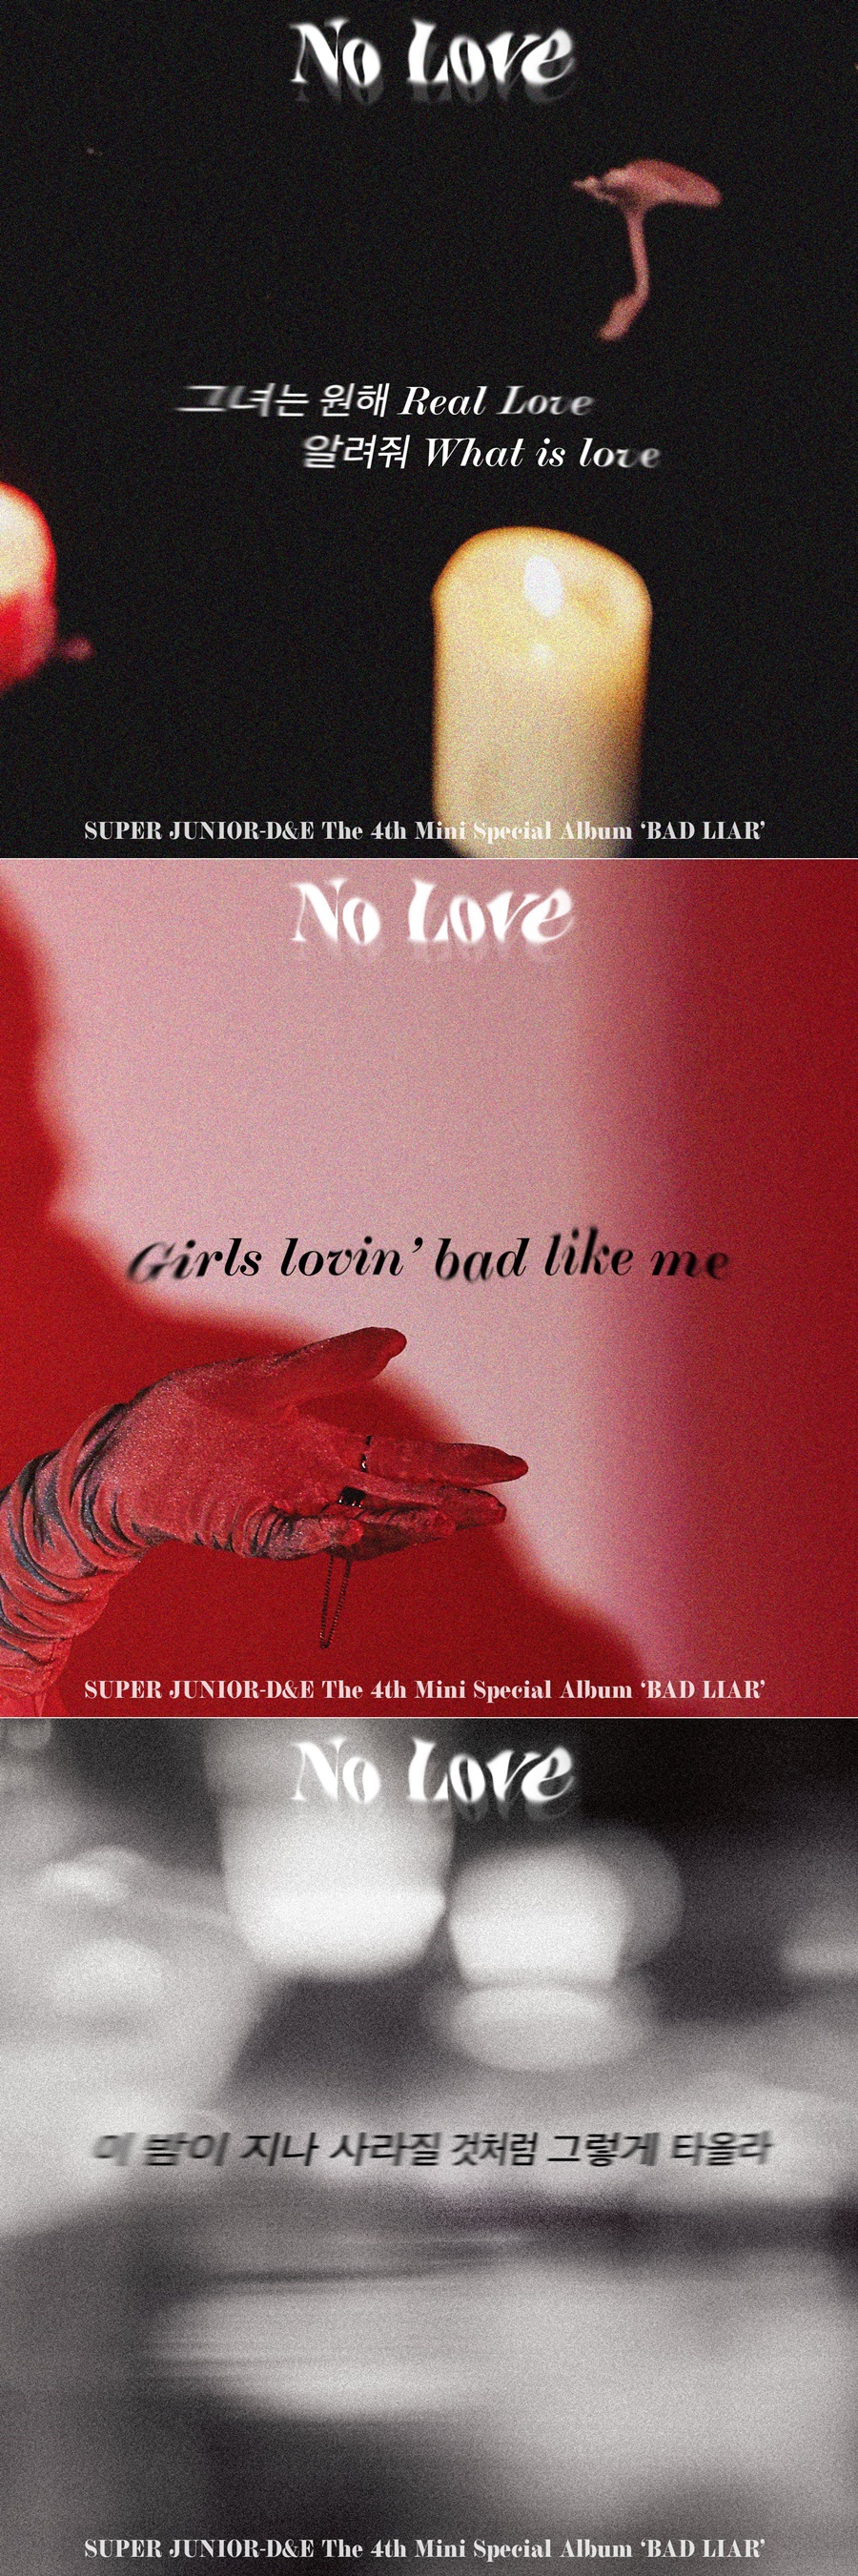 슈퍼주니어-D&E, 새 앨범 타이틀곡 'No Love' 가사 스포일러